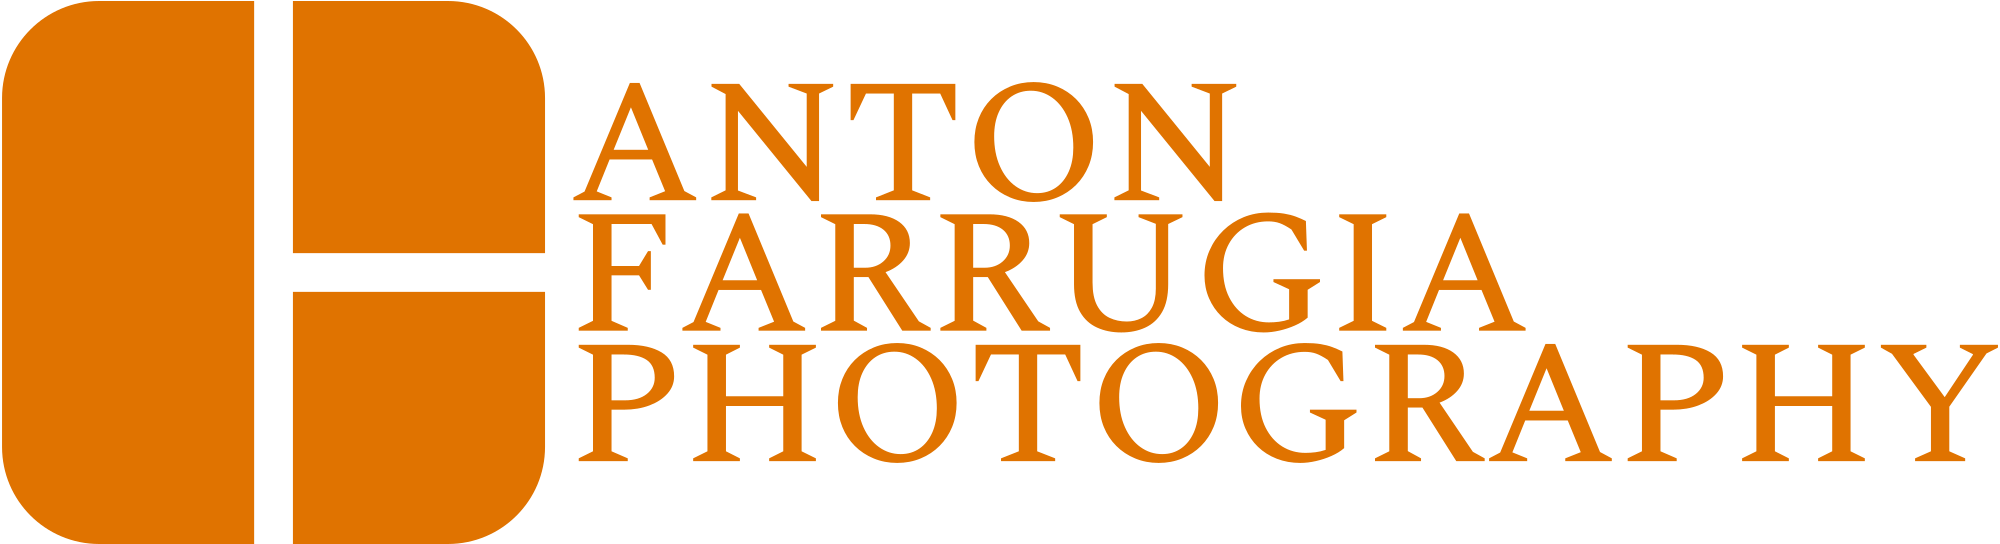 Anton Farrugia Photography